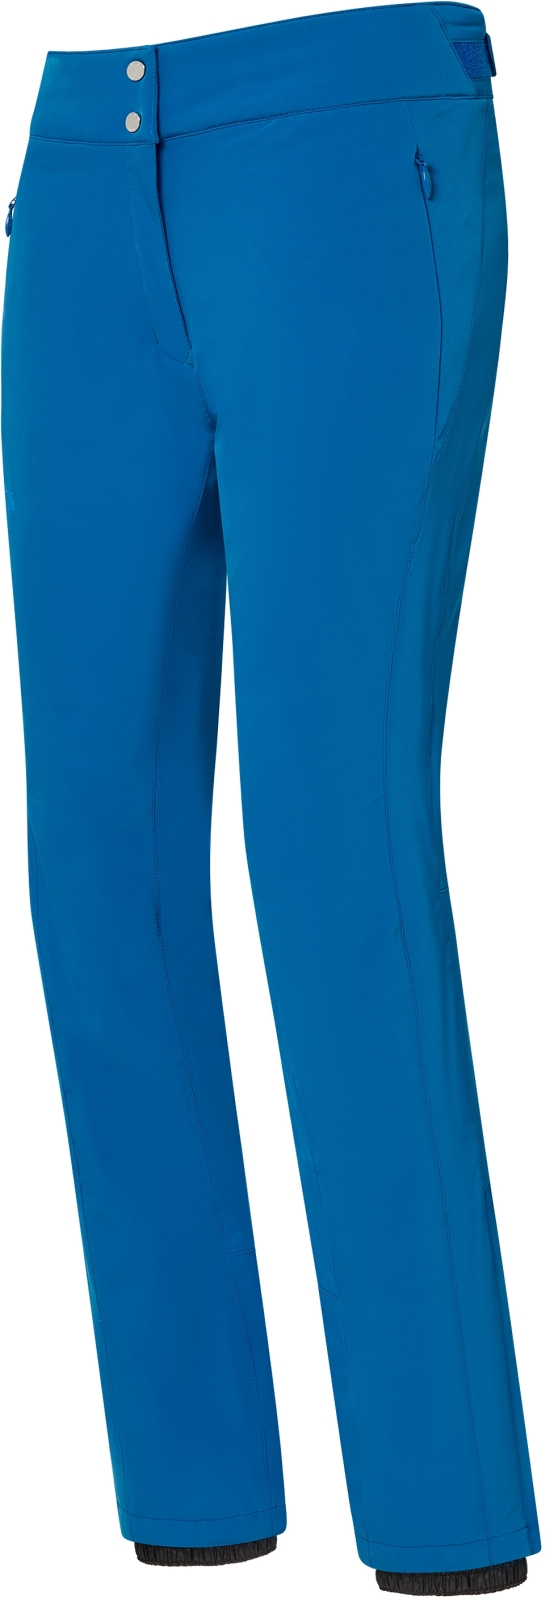 Levně Descente Dámské lyžařské kalhoty Giselle Insulated Pants - Lapis Blue XL